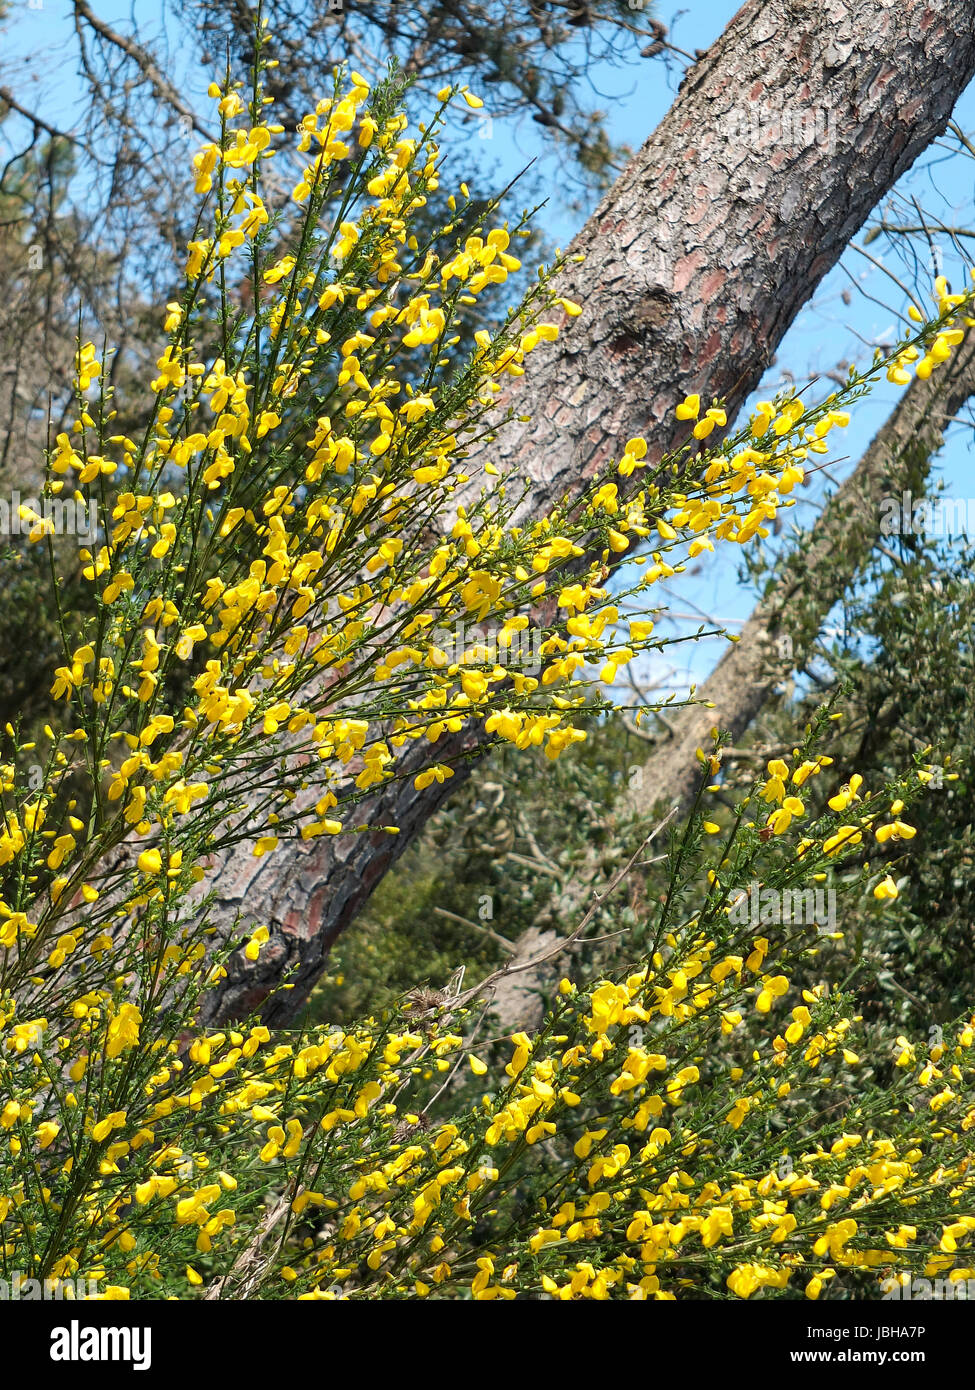 Ginestra Blumen einen typischen mediterranen Pflanzen. Wissenschaftlicher  Name: Cytisus scoparius Stockfotografie - Alamy